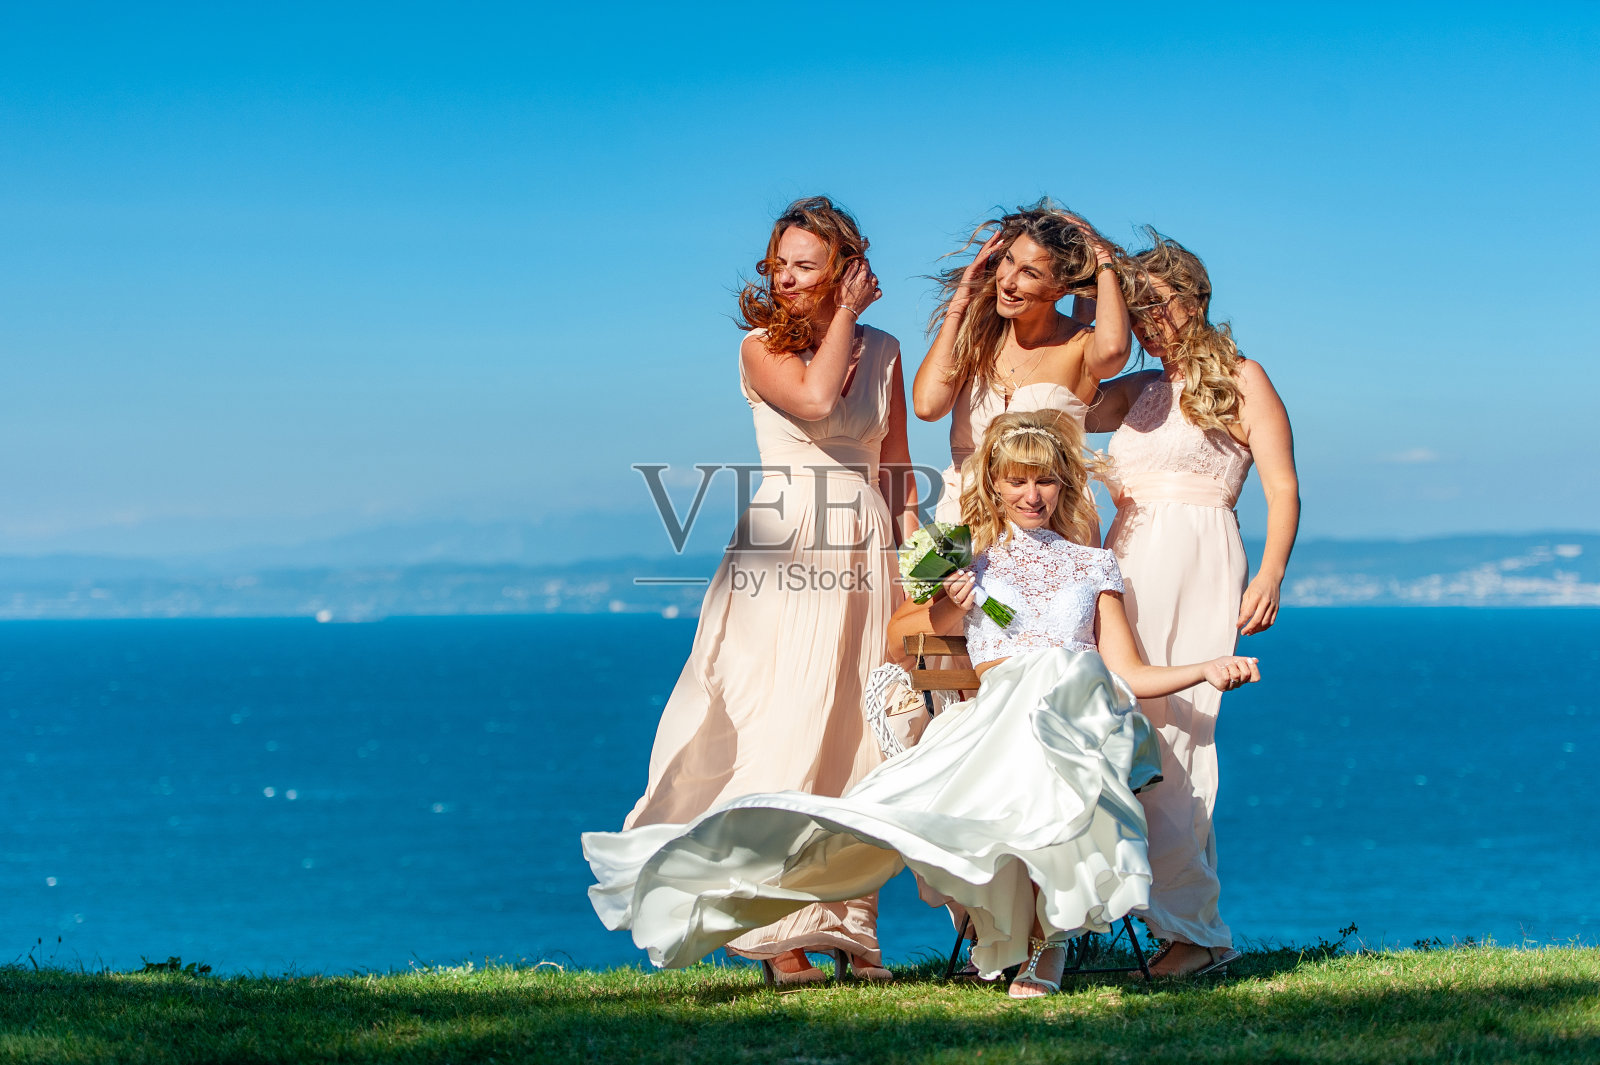 婚礼后新娘、伴娘和朋友在一起照片摄影图片